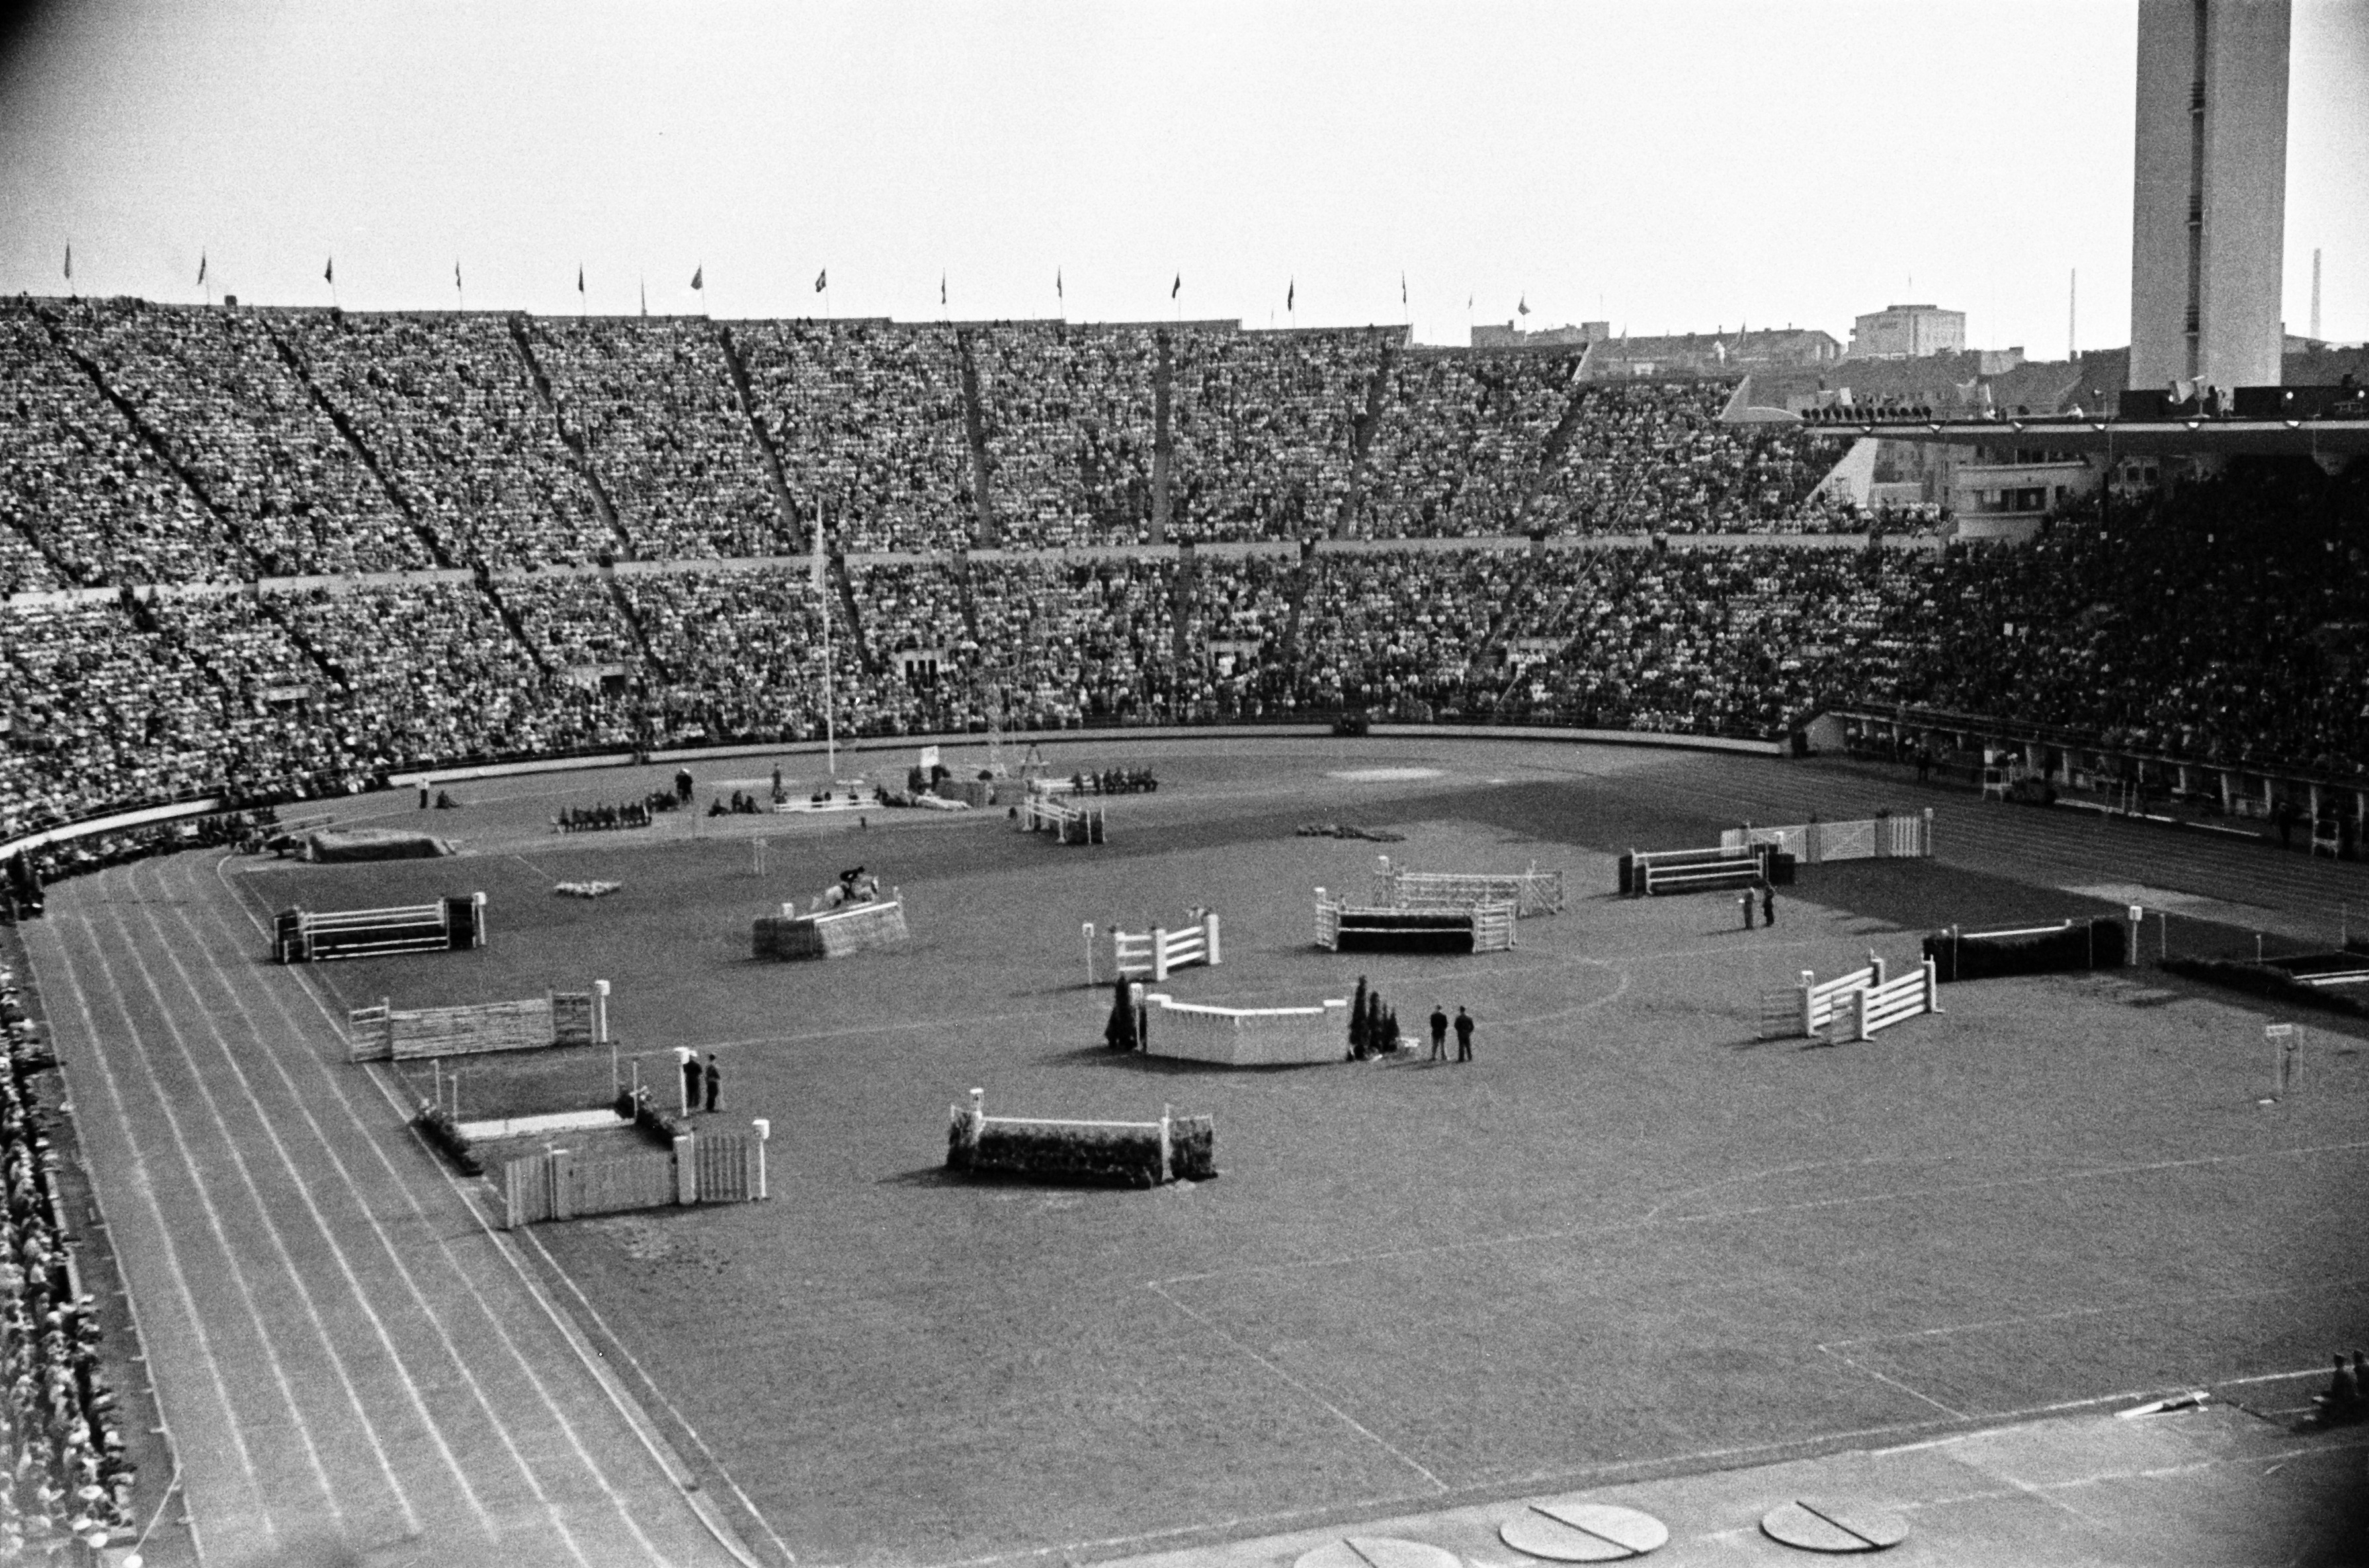 Helsingin olympiakisat 1952, kisojen päätöspäivä. Esteratsastuskilpailu Olympiastadionilla.